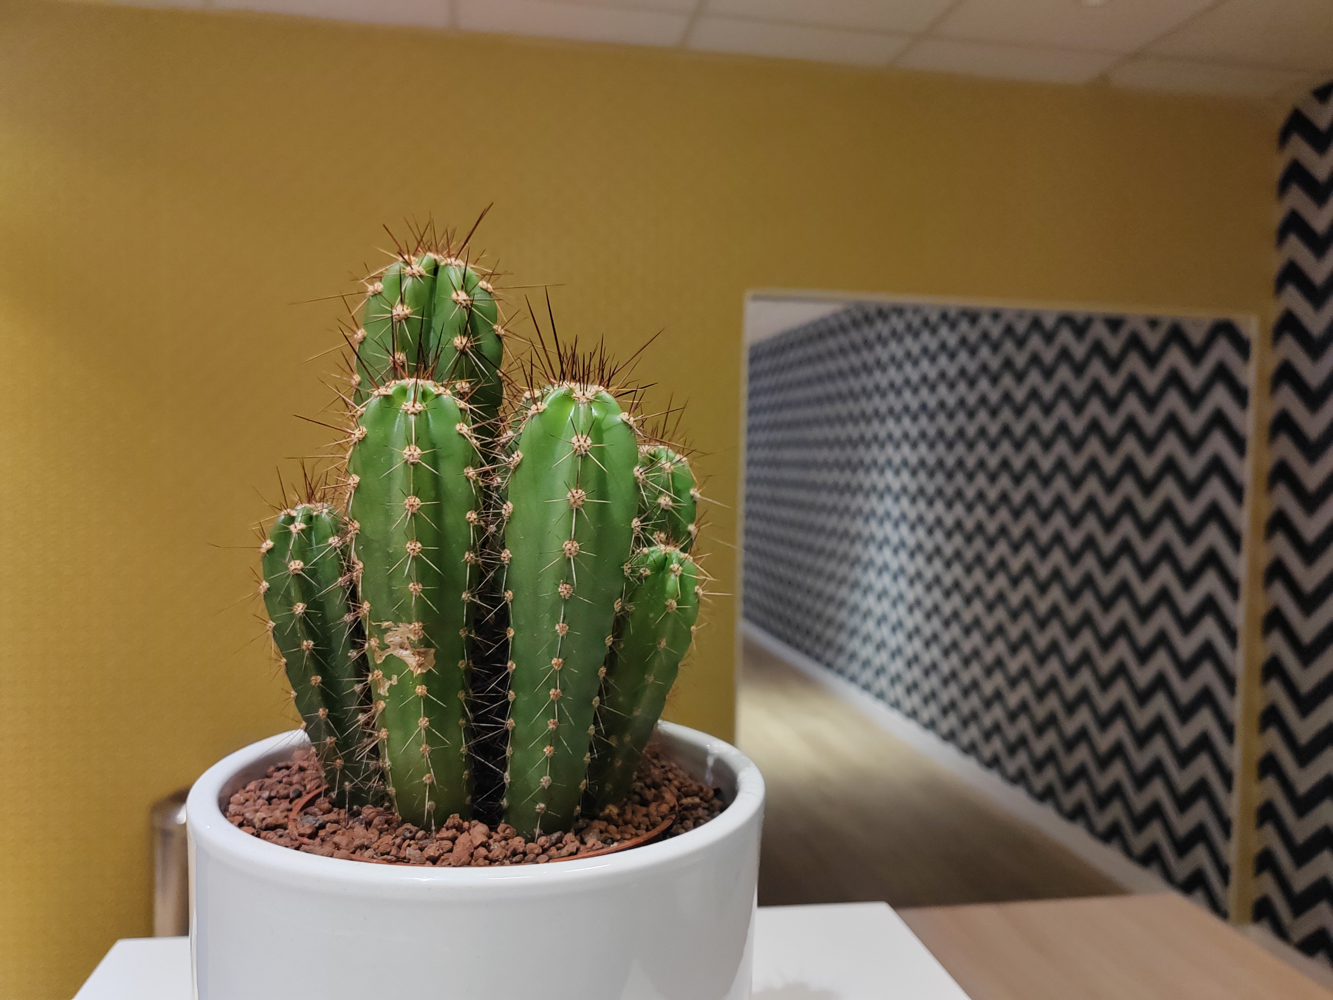 Honnor 70 camera samples cactus